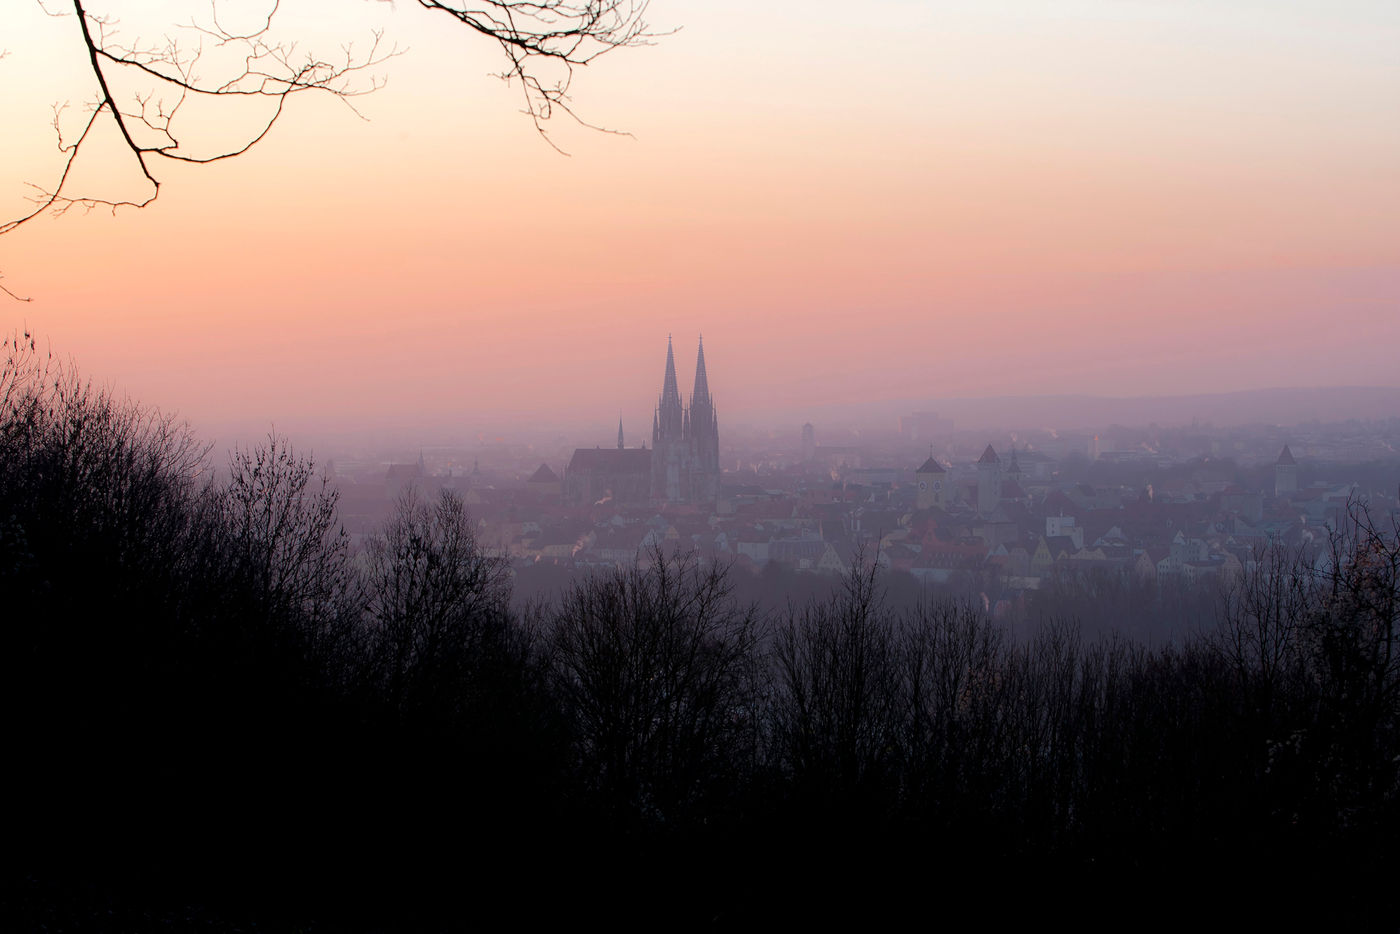 Regensburg von oben